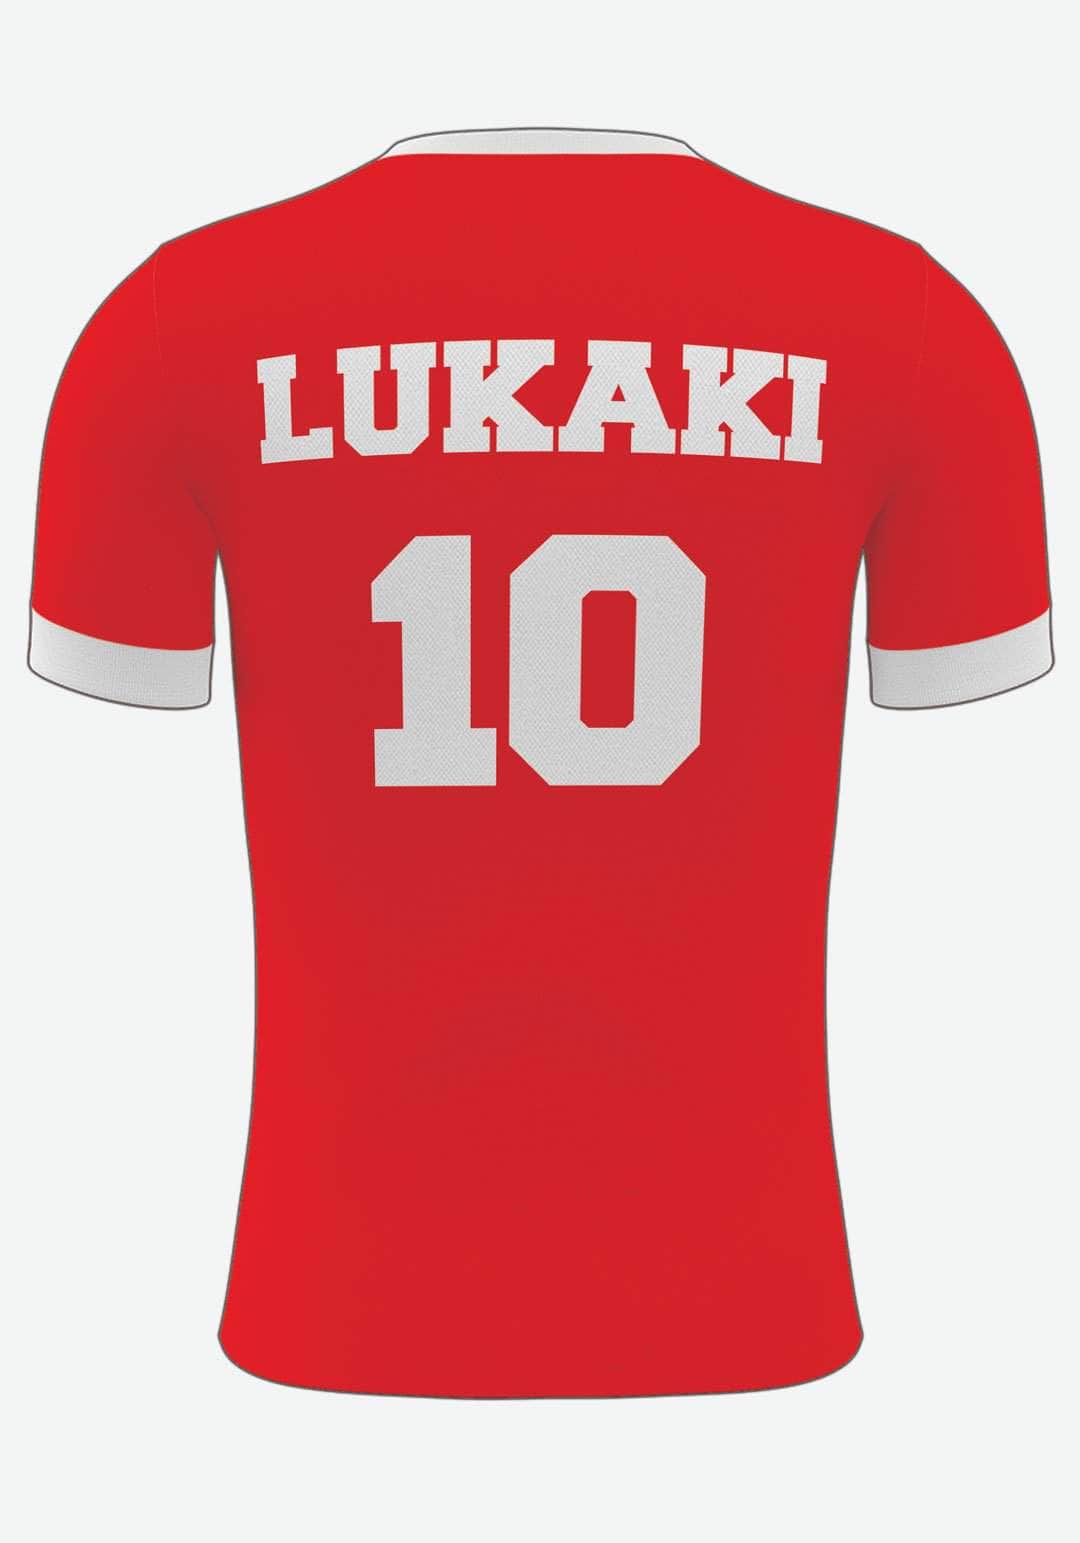 Se Manchester U. Fodboldplakat - med eget navn og nummer, 30x40 hos Lukaki.dk